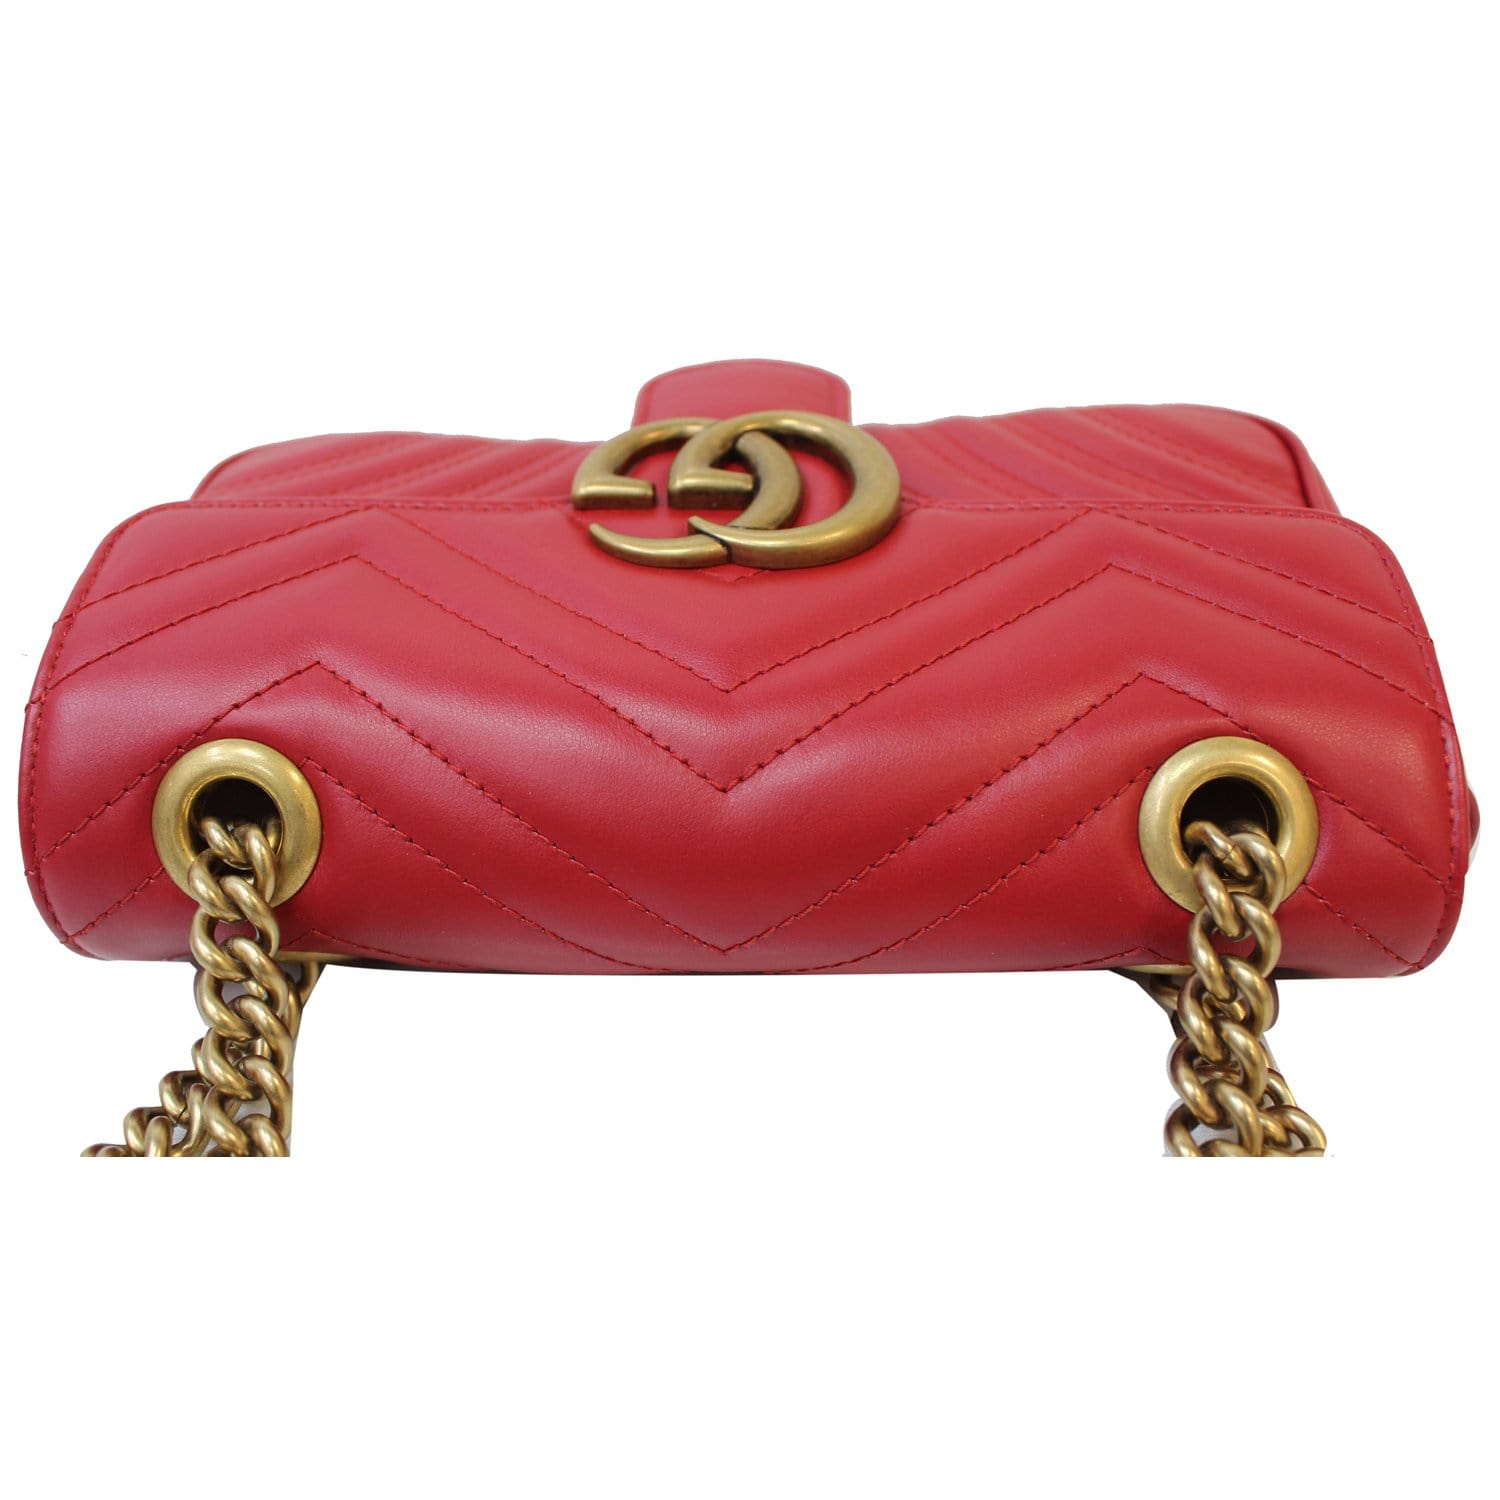 GUCCI: GG Marmont original shoulder bag - Red  Gucci mini bag 446744 HVKEG  online at